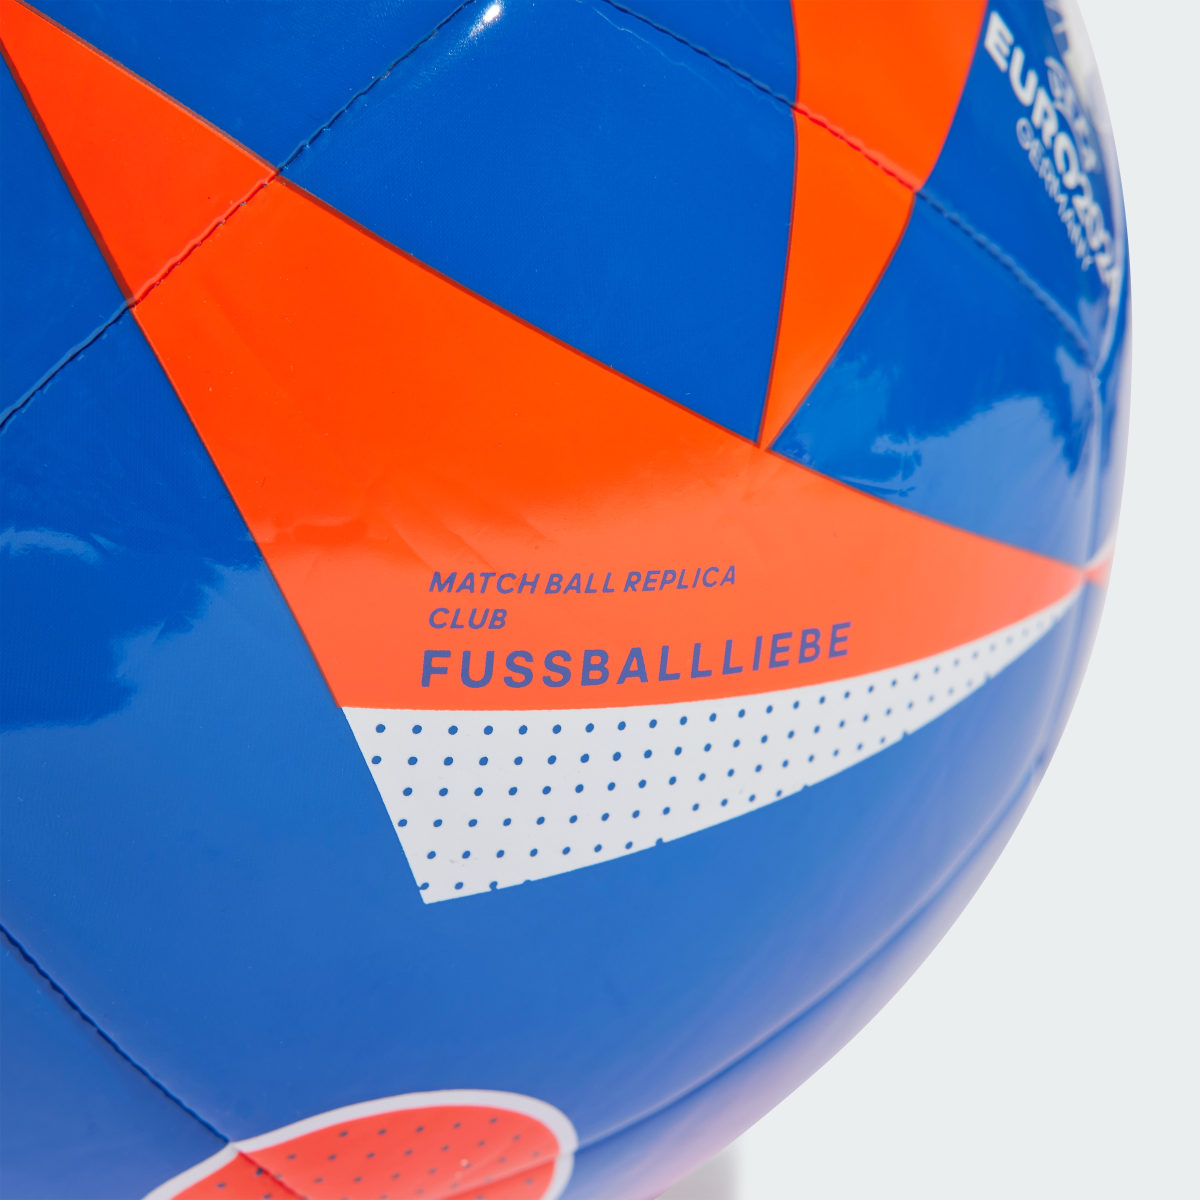 Adidas Fussballliebe Club Ball. 4